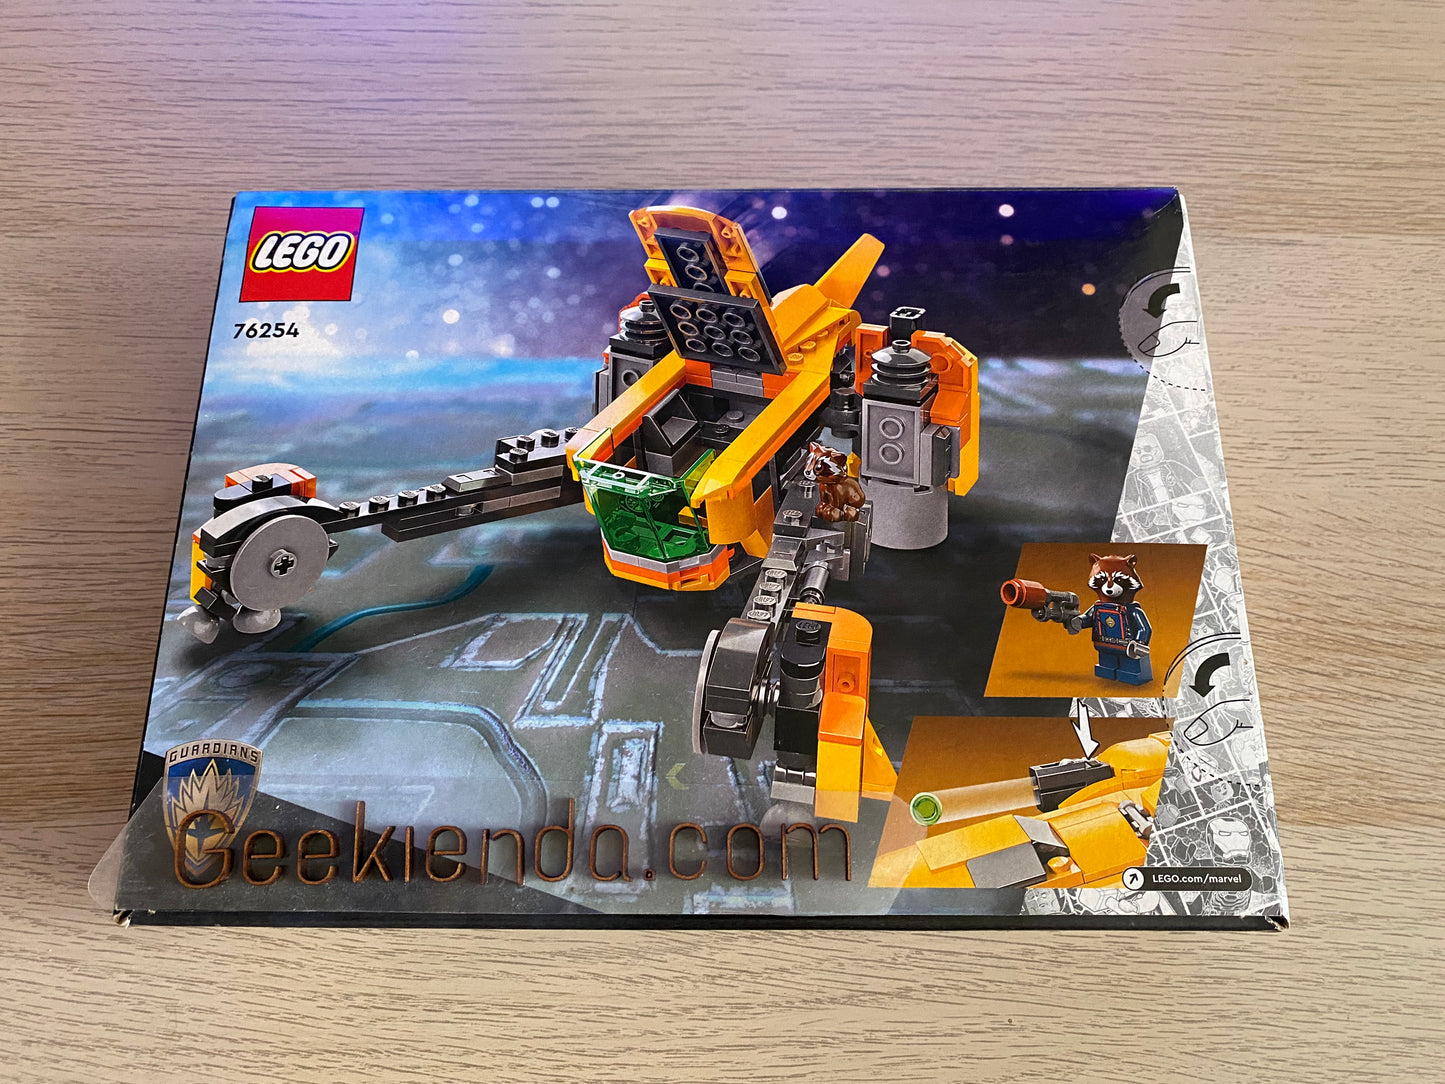 .Geekienda - LEGO SET 76254 Guardians of the Galaxy (guardianes de la galaxia) baby rocket’s ship - LEGO Marvel